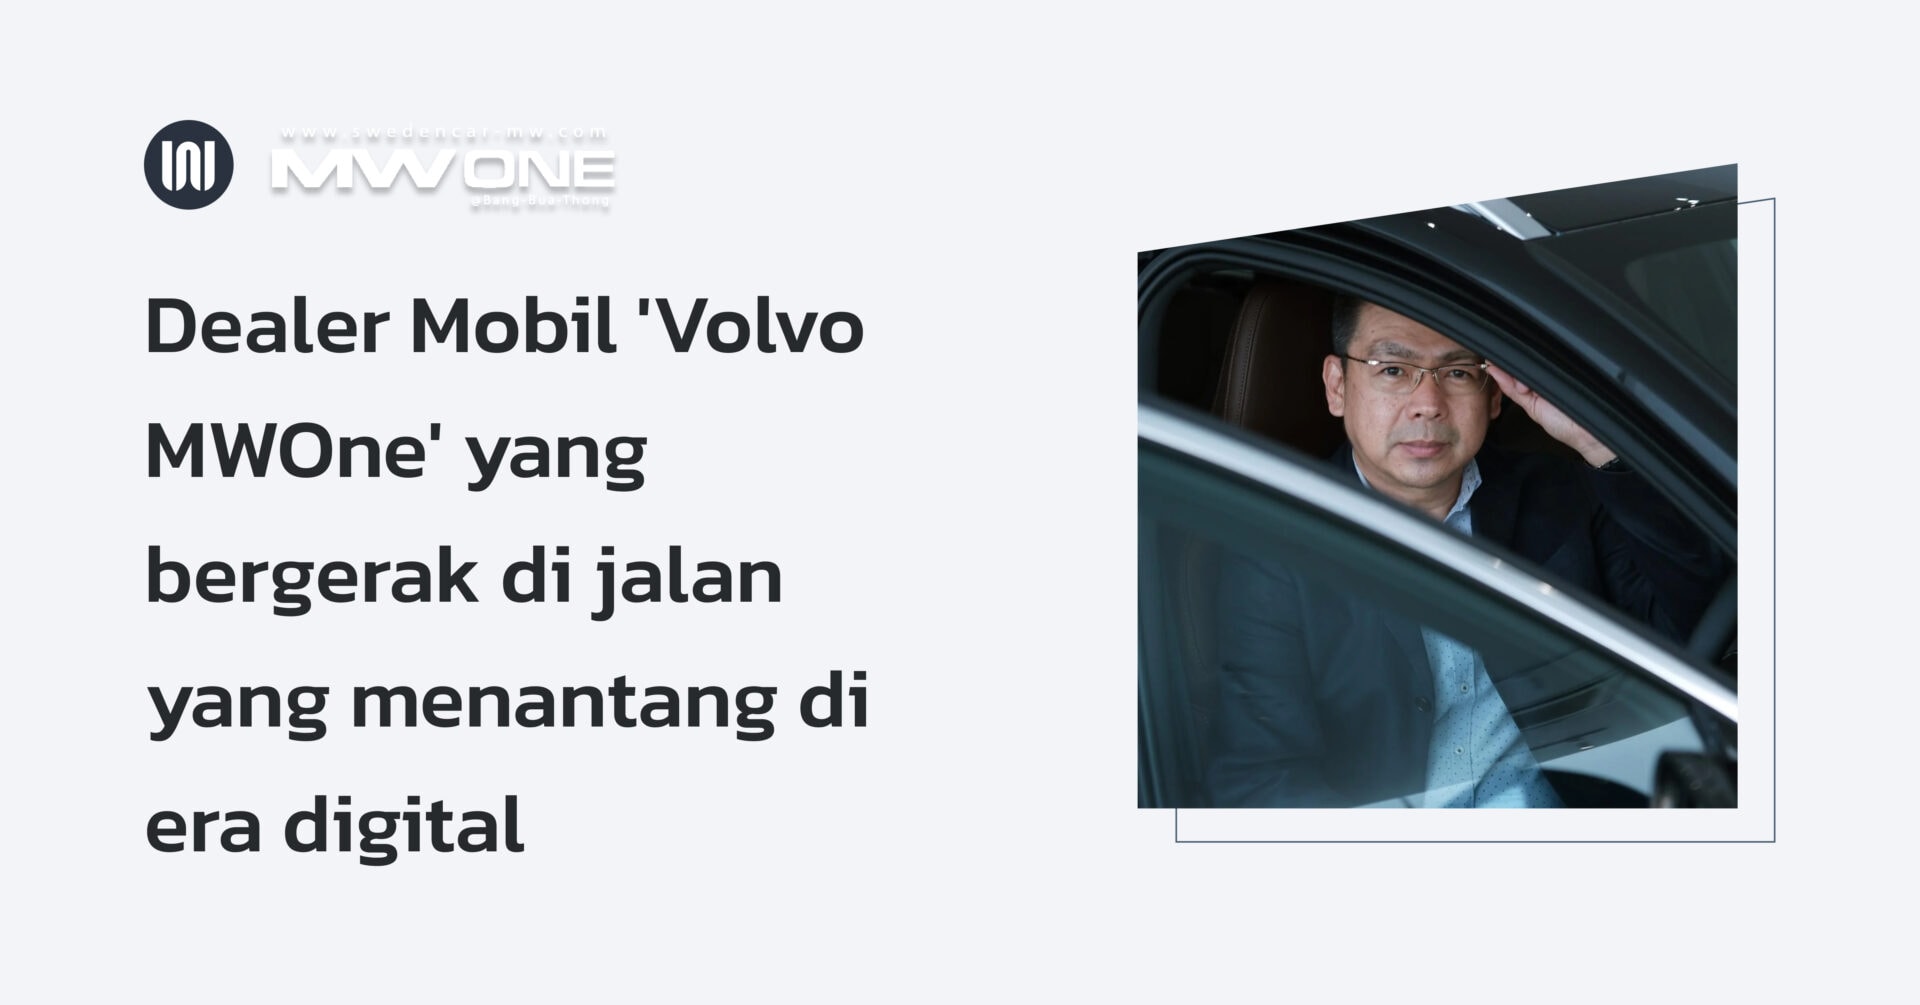 Dealer Mobil 'Volvo MWOne' yang bergerak di jalan yang menantang di era digital